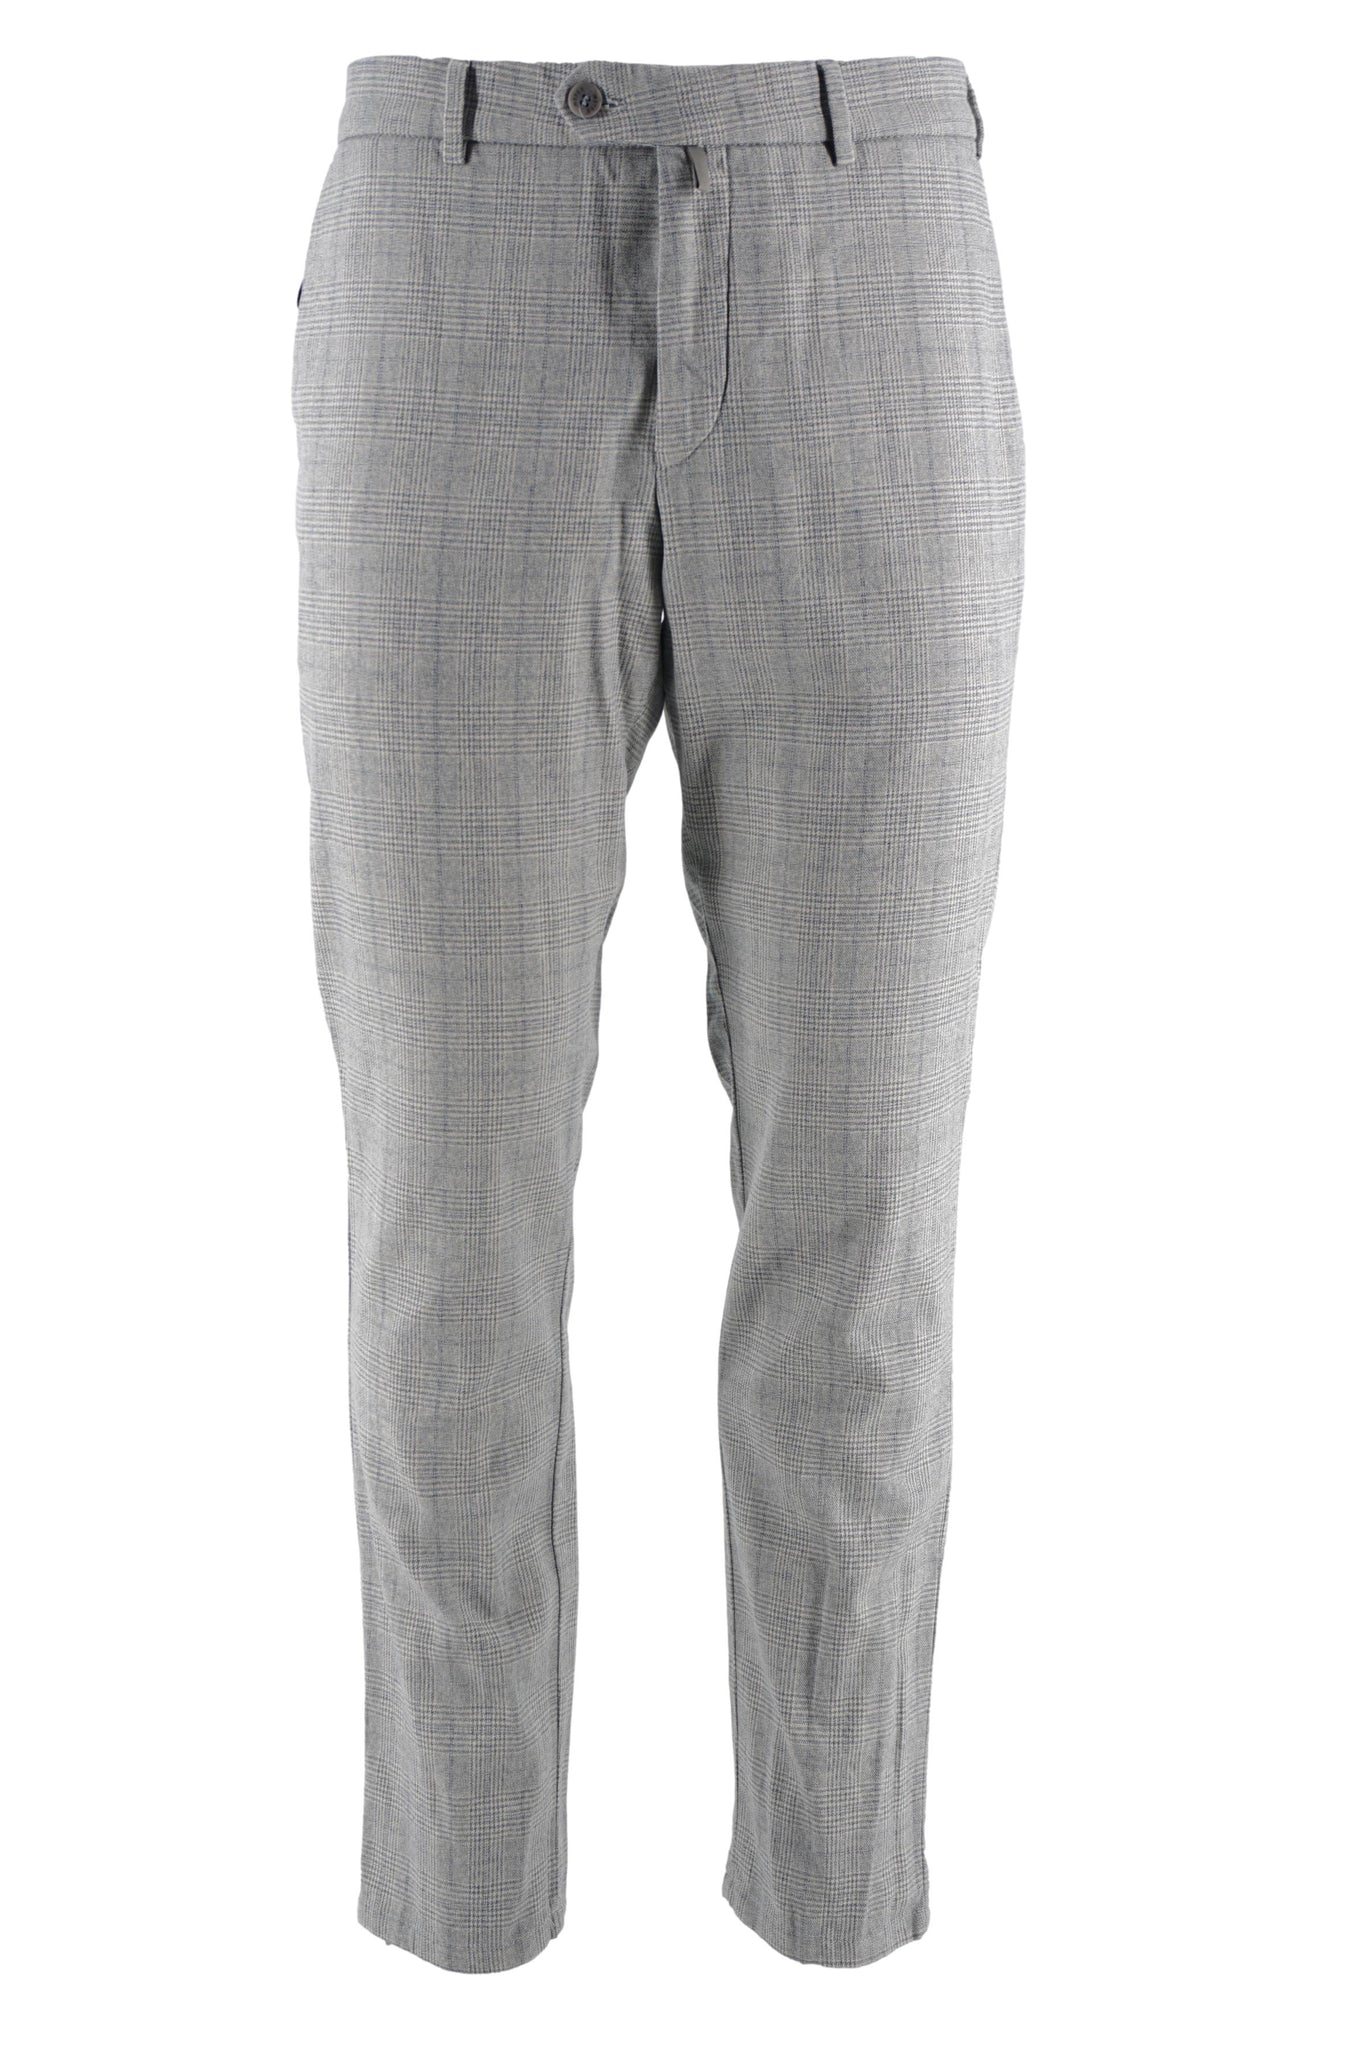 Pantalone con Fantasia Modello Bonn / Grigio - Ideal Moda